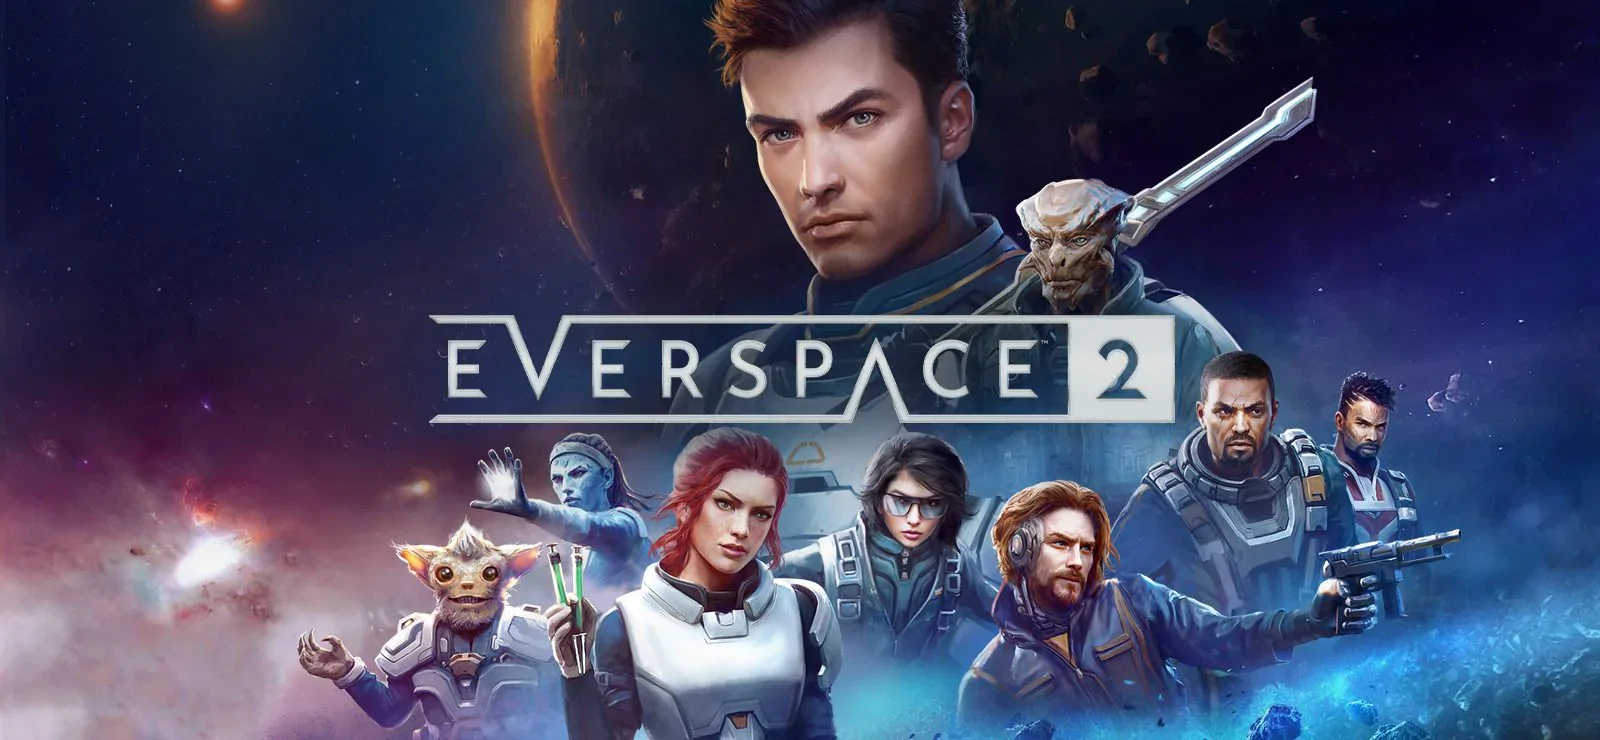 Everspace 2 – recenzja gry. Najlepsza kosmiczna przygoda od czasu Mass Effecta?